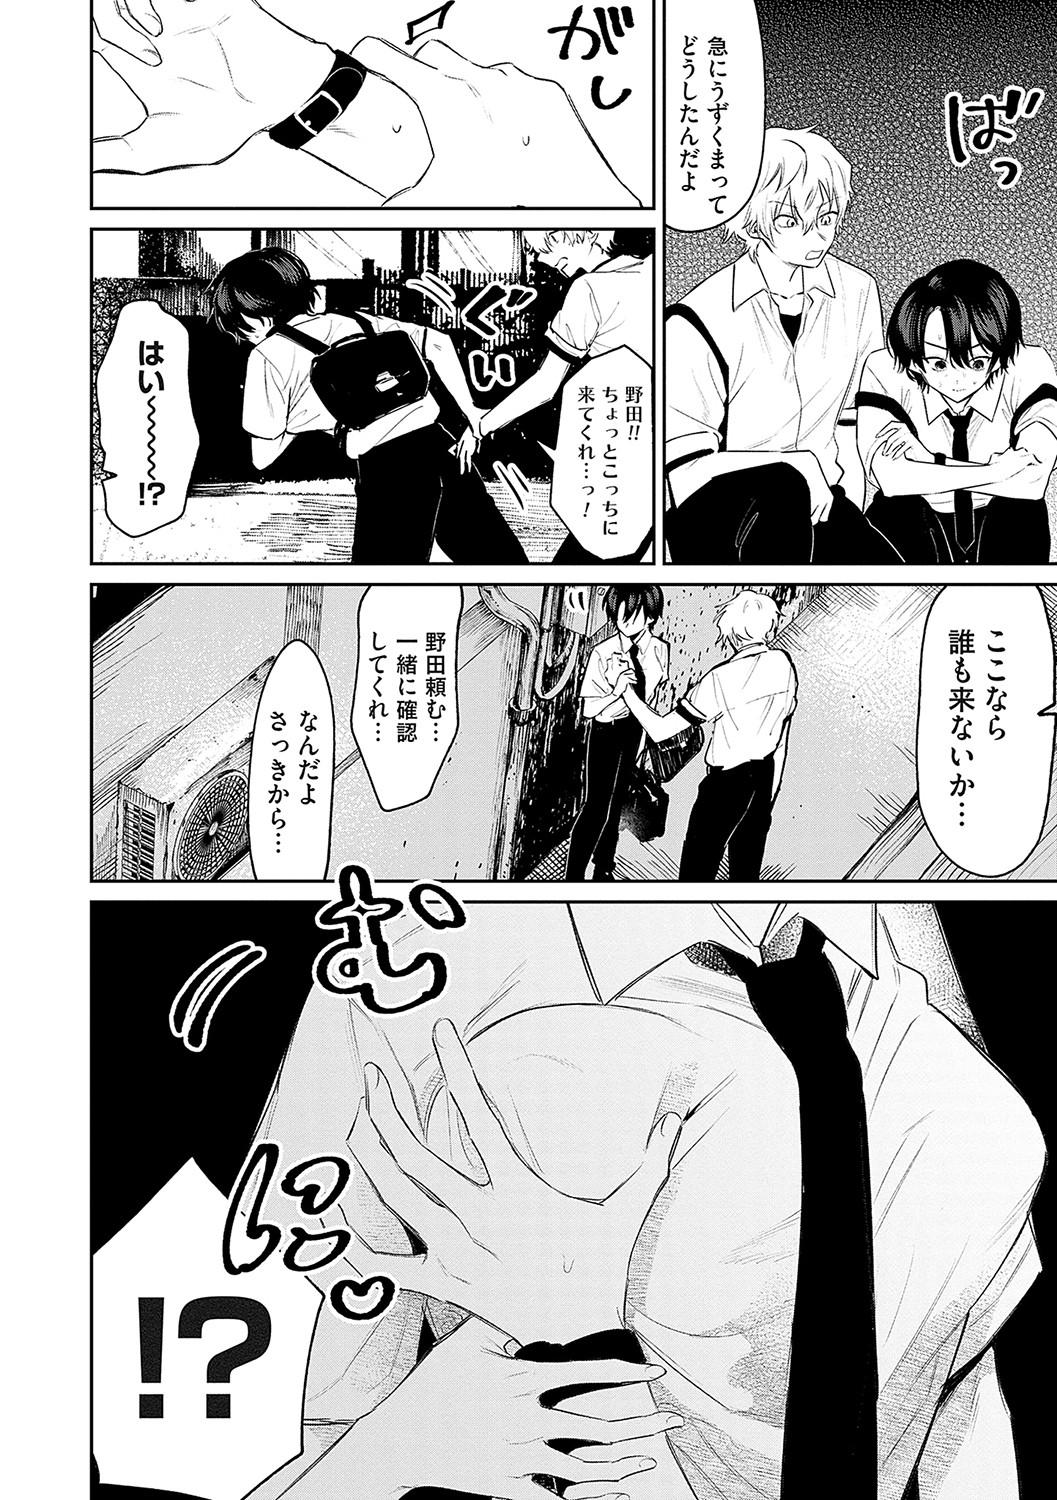 Fist Ore no osananajimi ♂ ga ¥ 1000 de chou ero itai ♀ ni narimashita Step Sister - Page 9